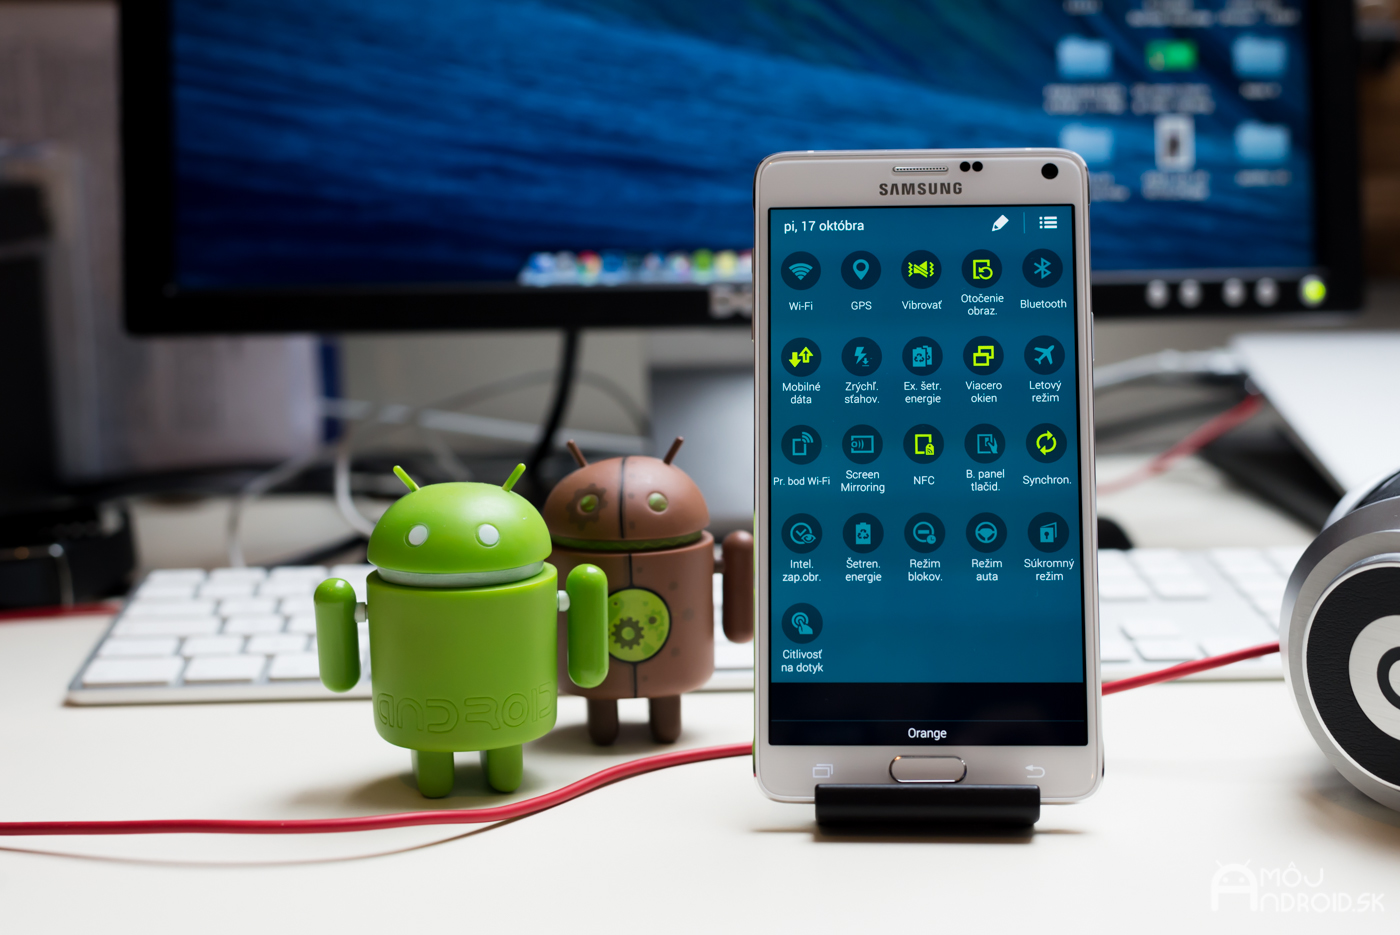 Samsung Galaxy Note 4 v roku 2014 vyhral kategóriu TOP smartfón